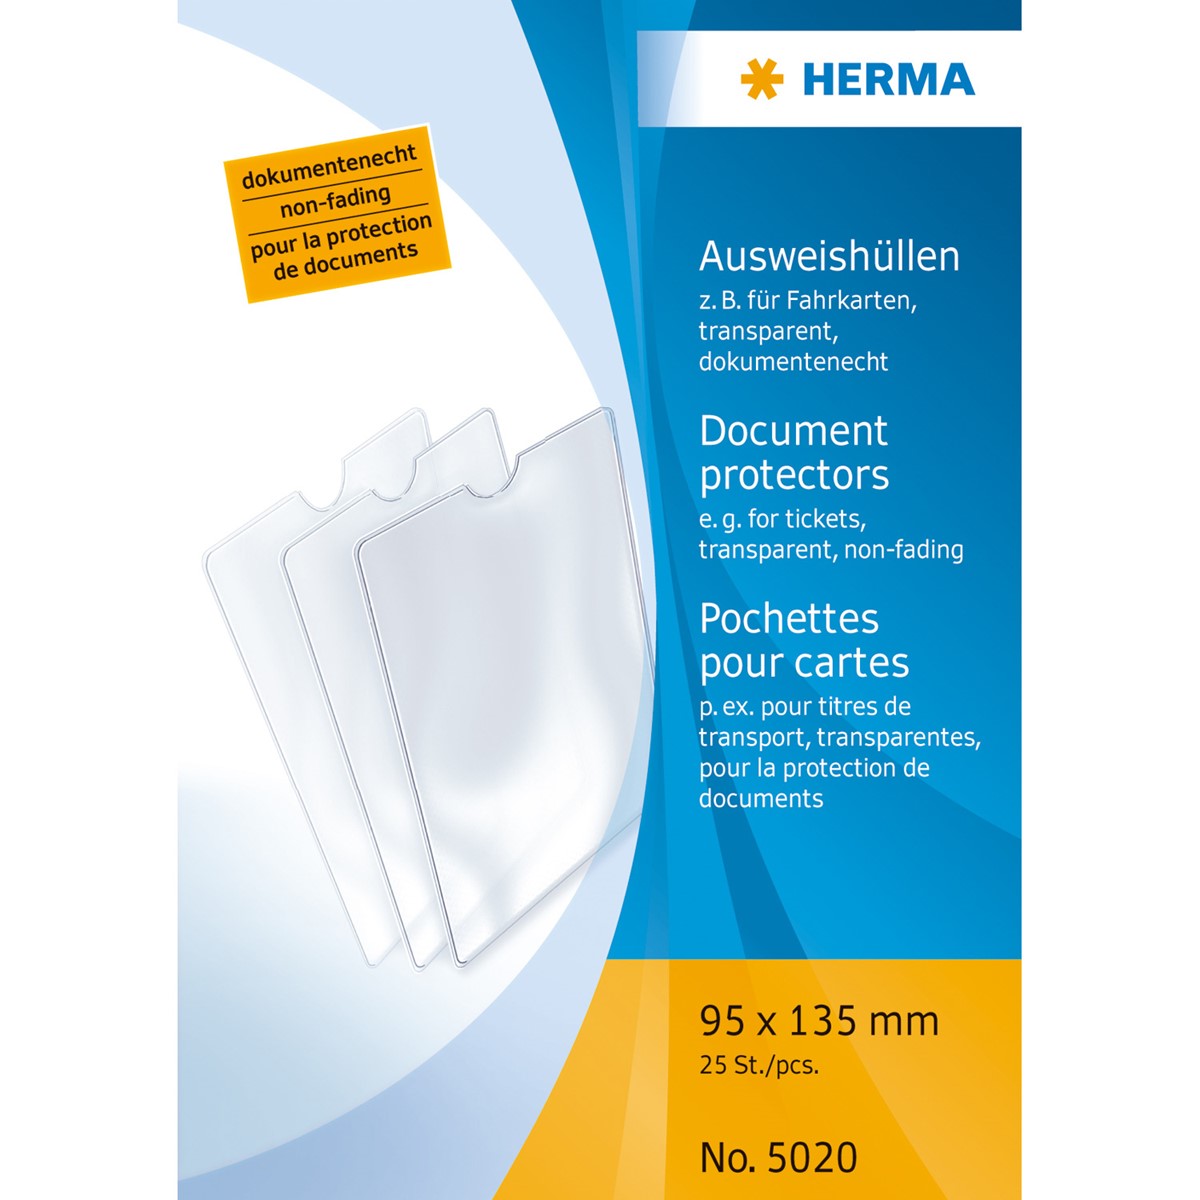 Herma - Ausweishülle 95 x 135 mm, für Fahrkarte, Kinderausweise, Impfpaß (klein), einfach